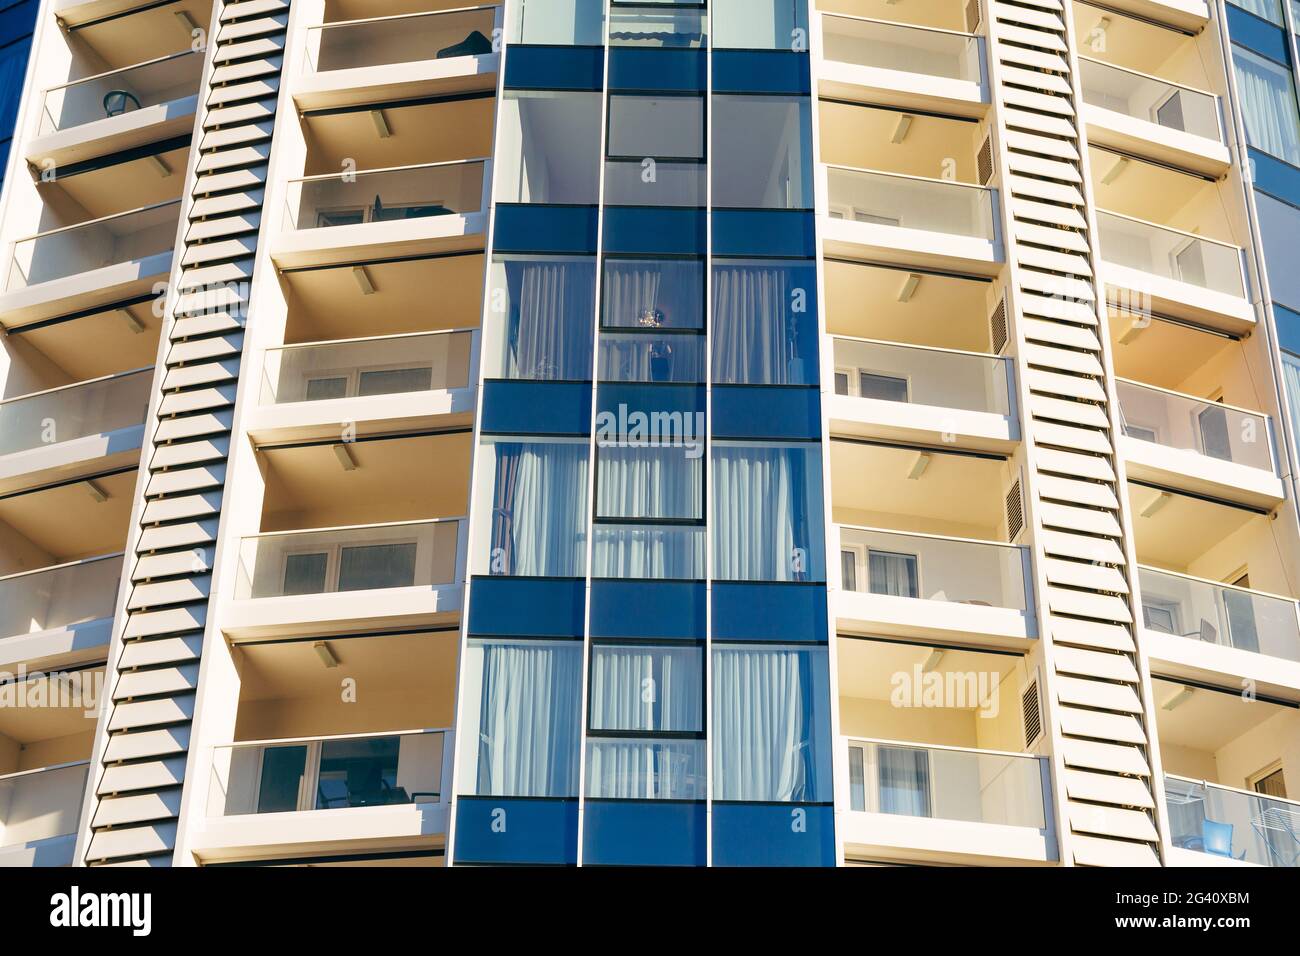 Un primo piano delle finestre di un alto edificio a più piani in blu e beige con balconi con vetri. Foto Stock